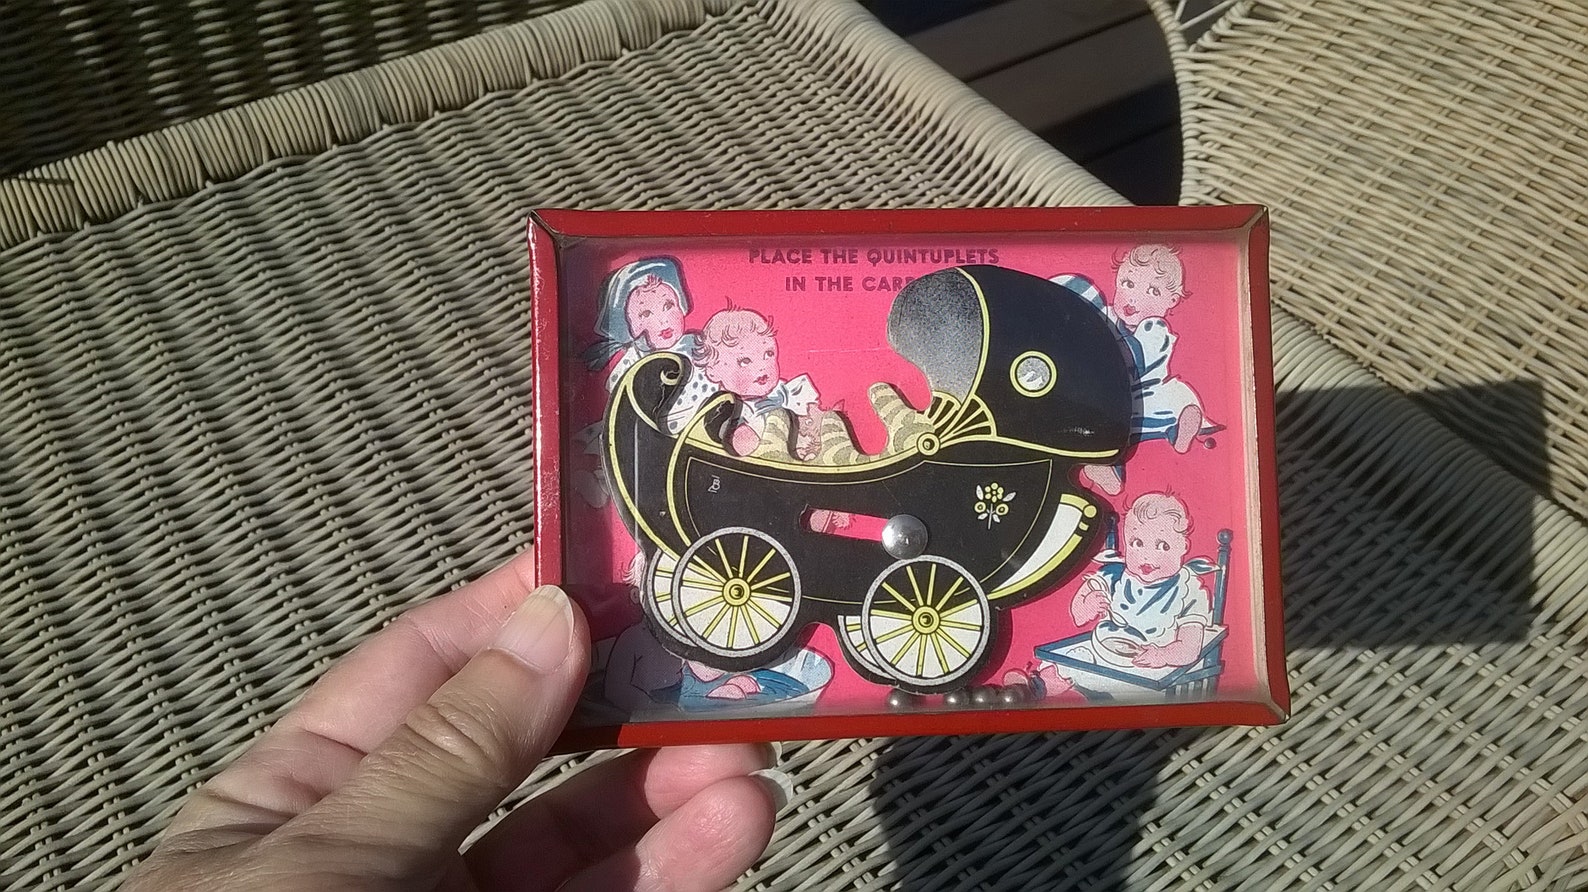 Vintage antiguos Quintuplets bebé carro juguete juego | Etsy